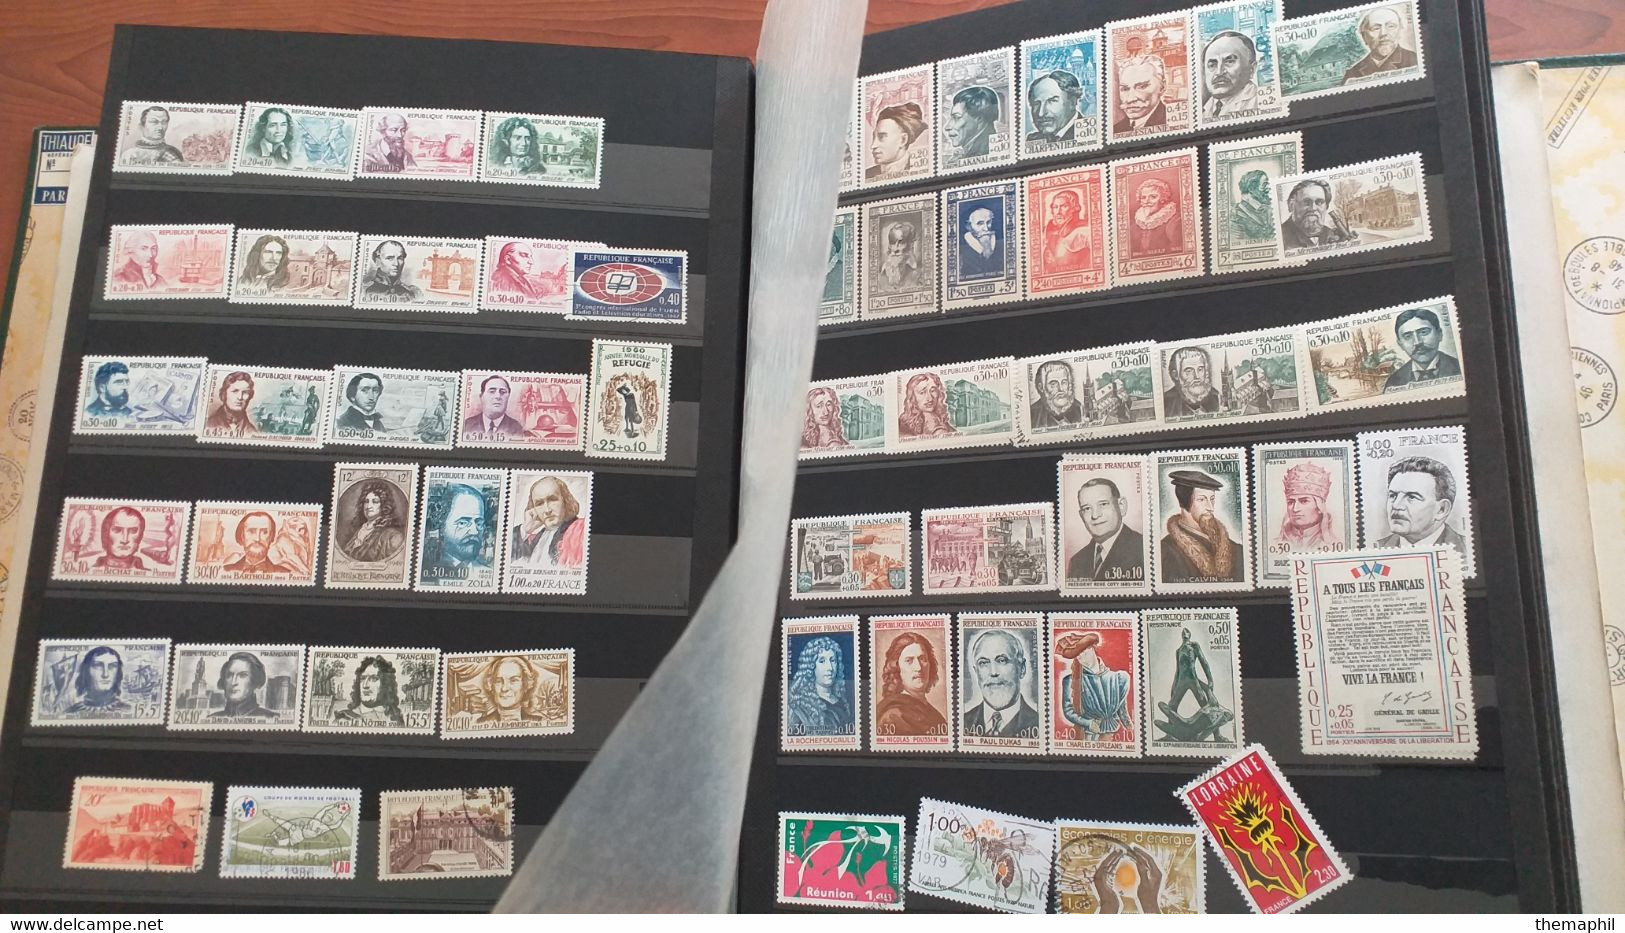 lots TH .154 FRANCE importante accumulations de timbres toutes periode  neufs xx / x ou obl. forte cote